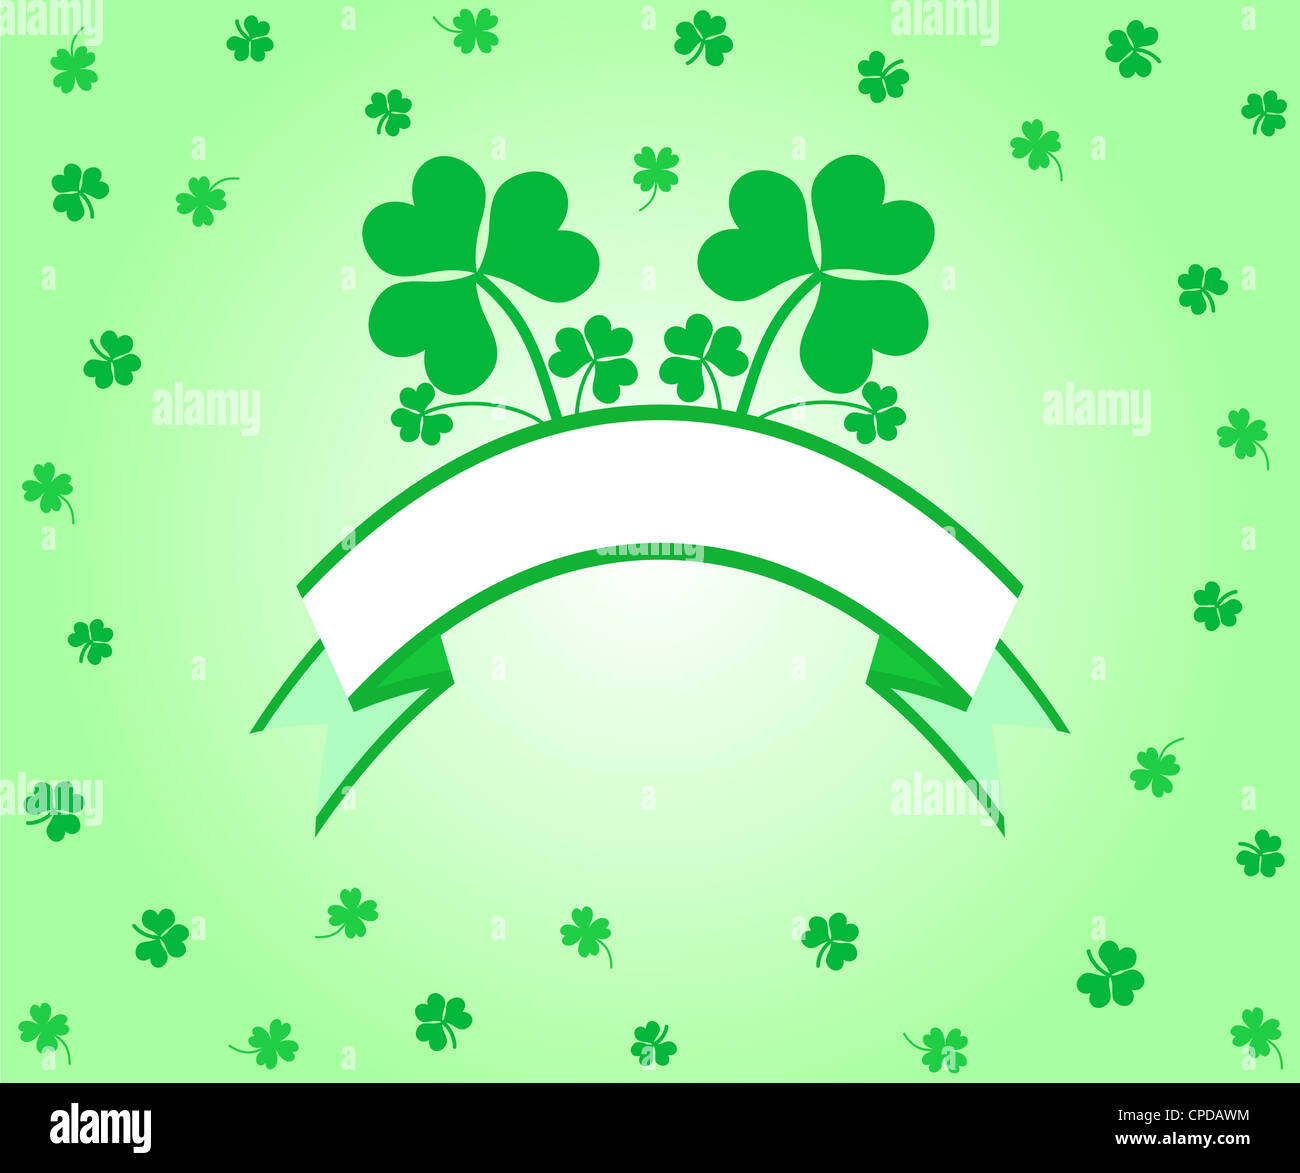 Green lucky shamrocks banner Stock Photo